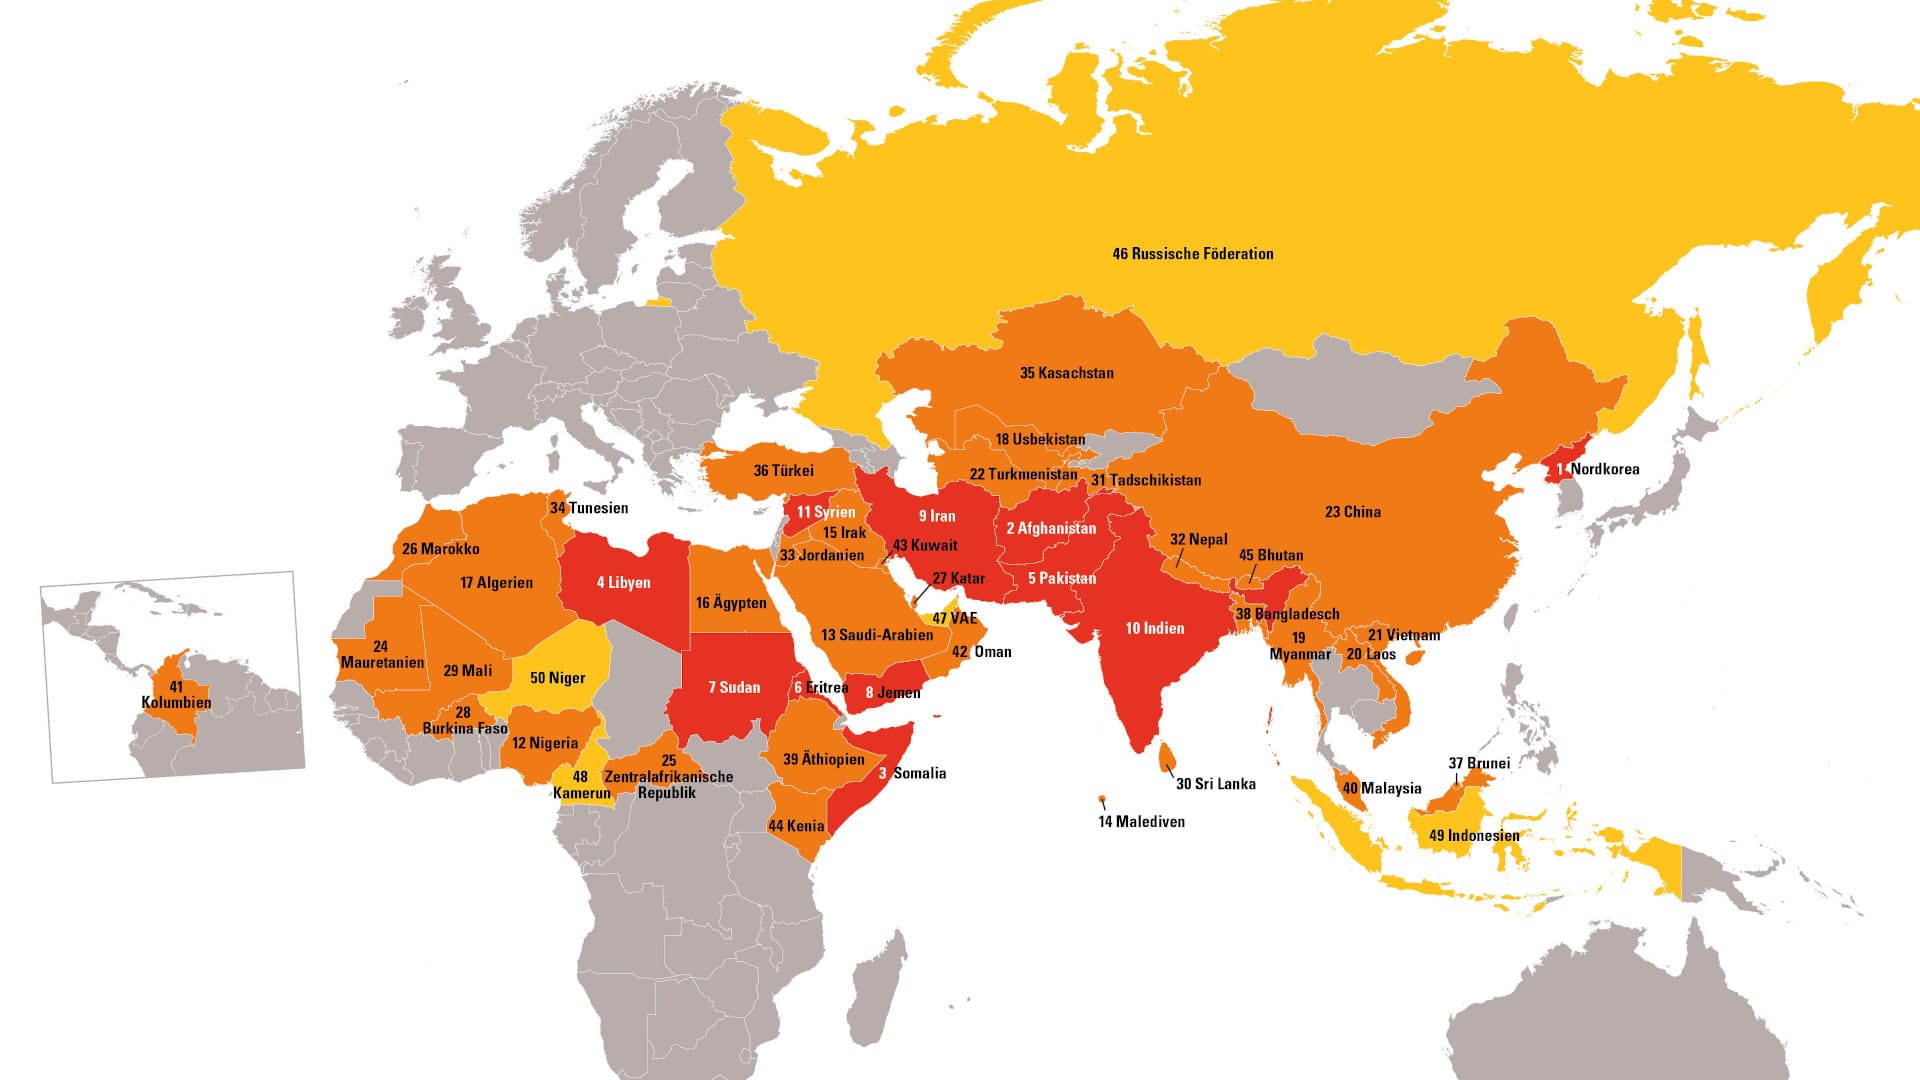 Der Weltverfolgungsindex listet 50 Länder, in denen Christen starken Repressalien ausgesetzt sind